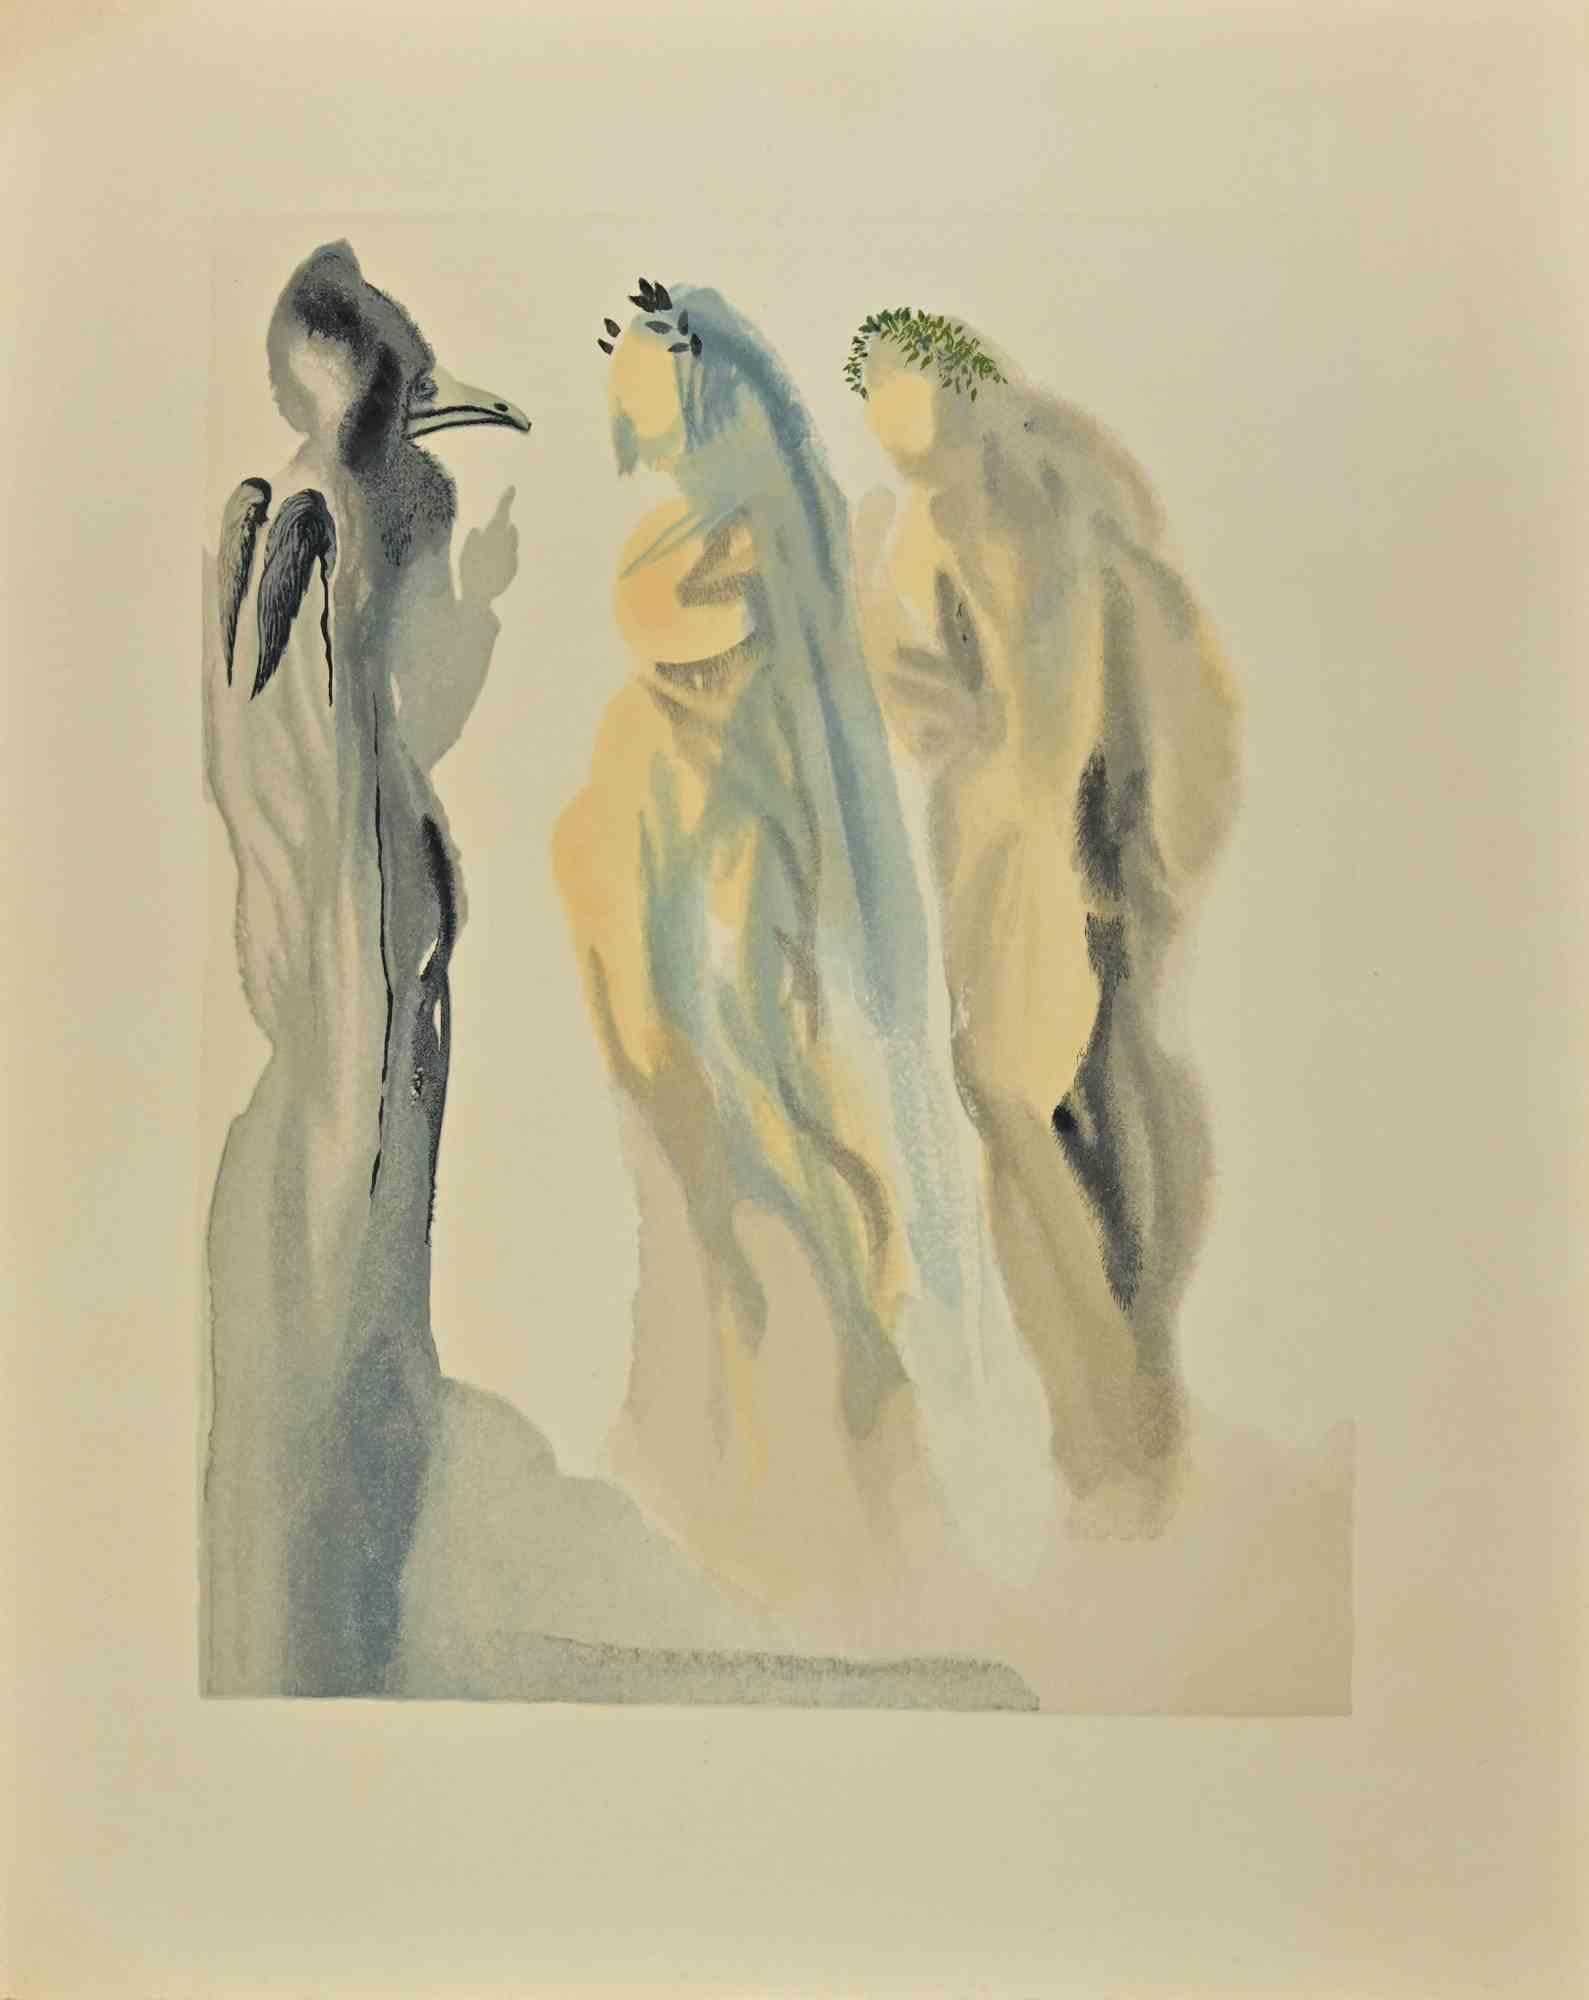 El obispo trovador "La Divina Comedia" - xilografía attr Salvador Dalí- 1963